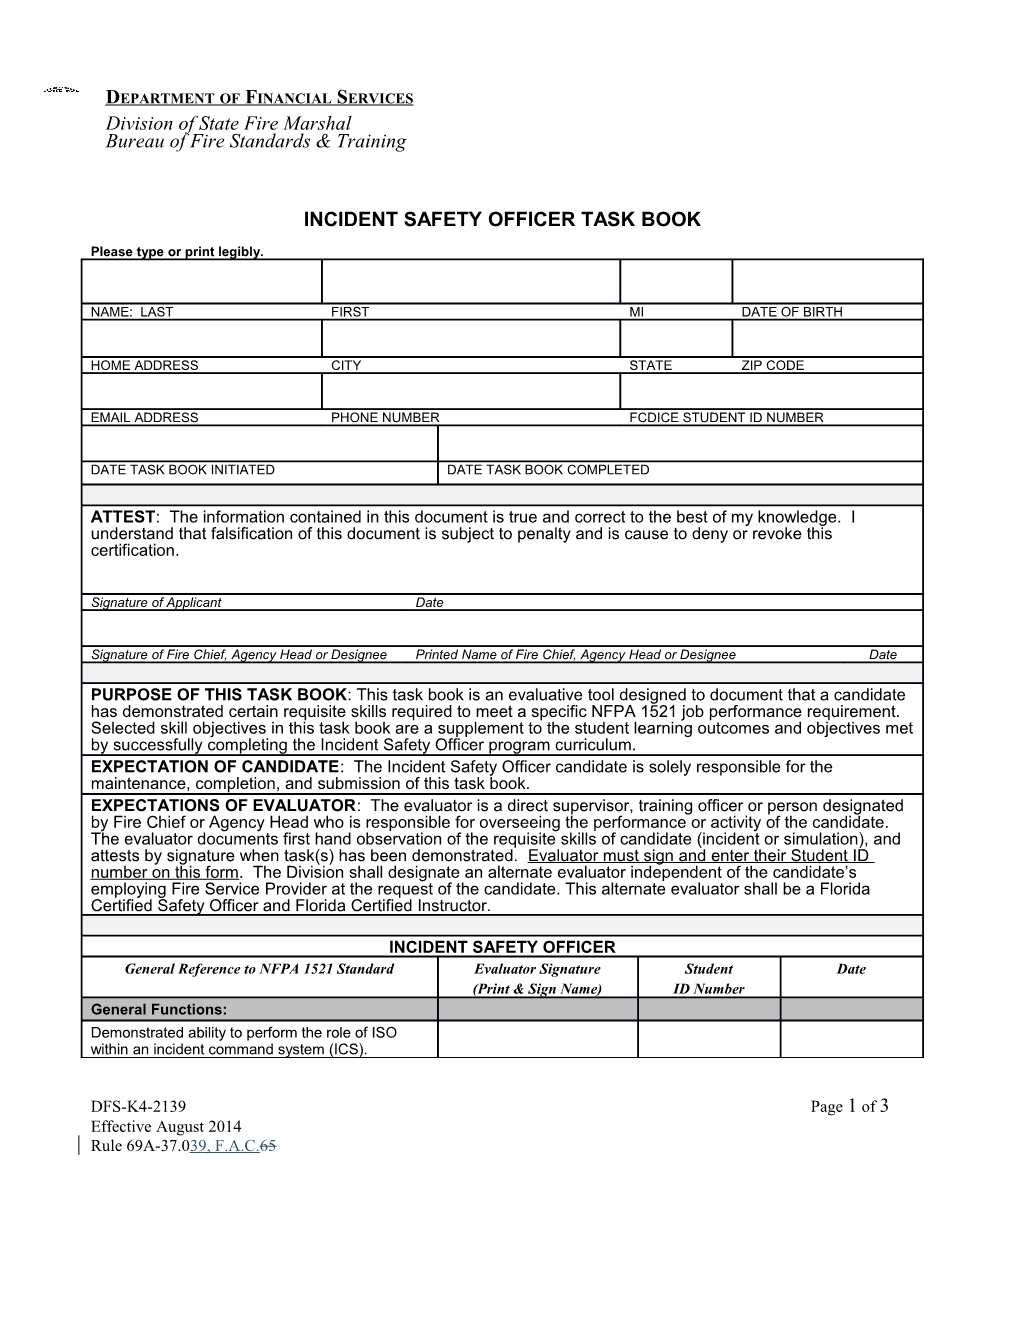 Incident Safety Officer Task Book